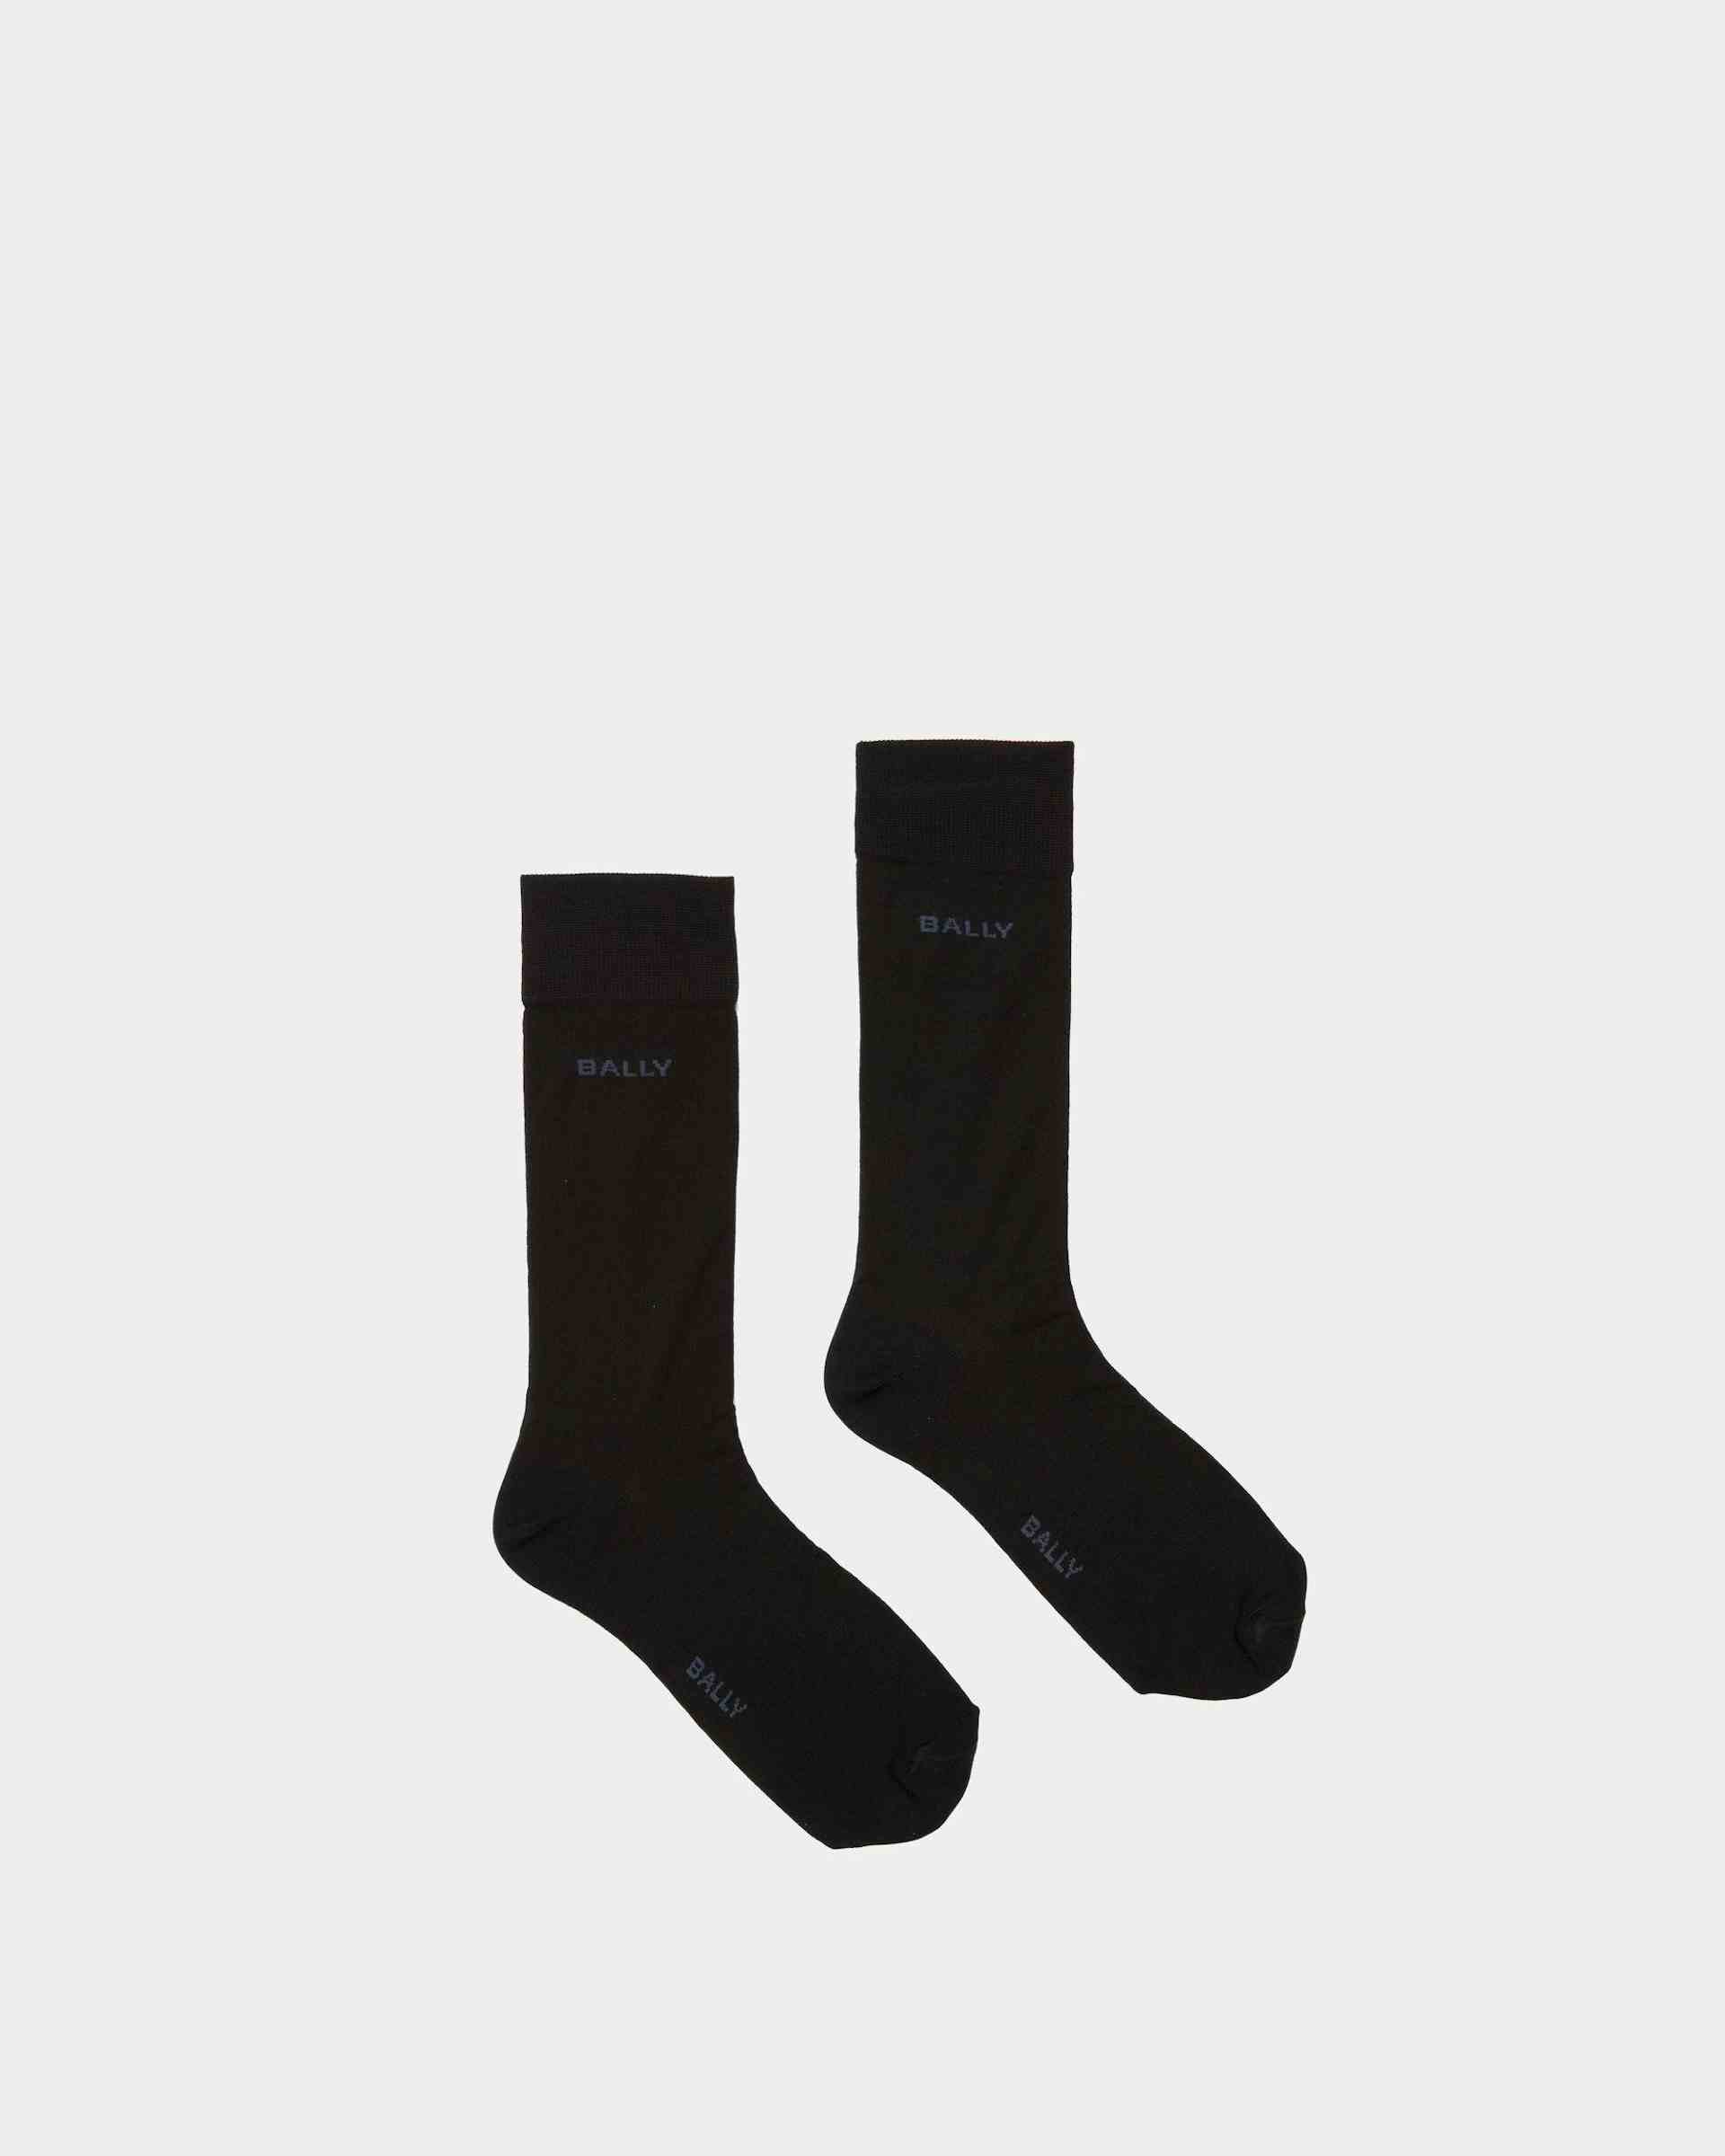 Chaussettes avec logo Coton chiné couleur encre et indigo - Homme - Bally